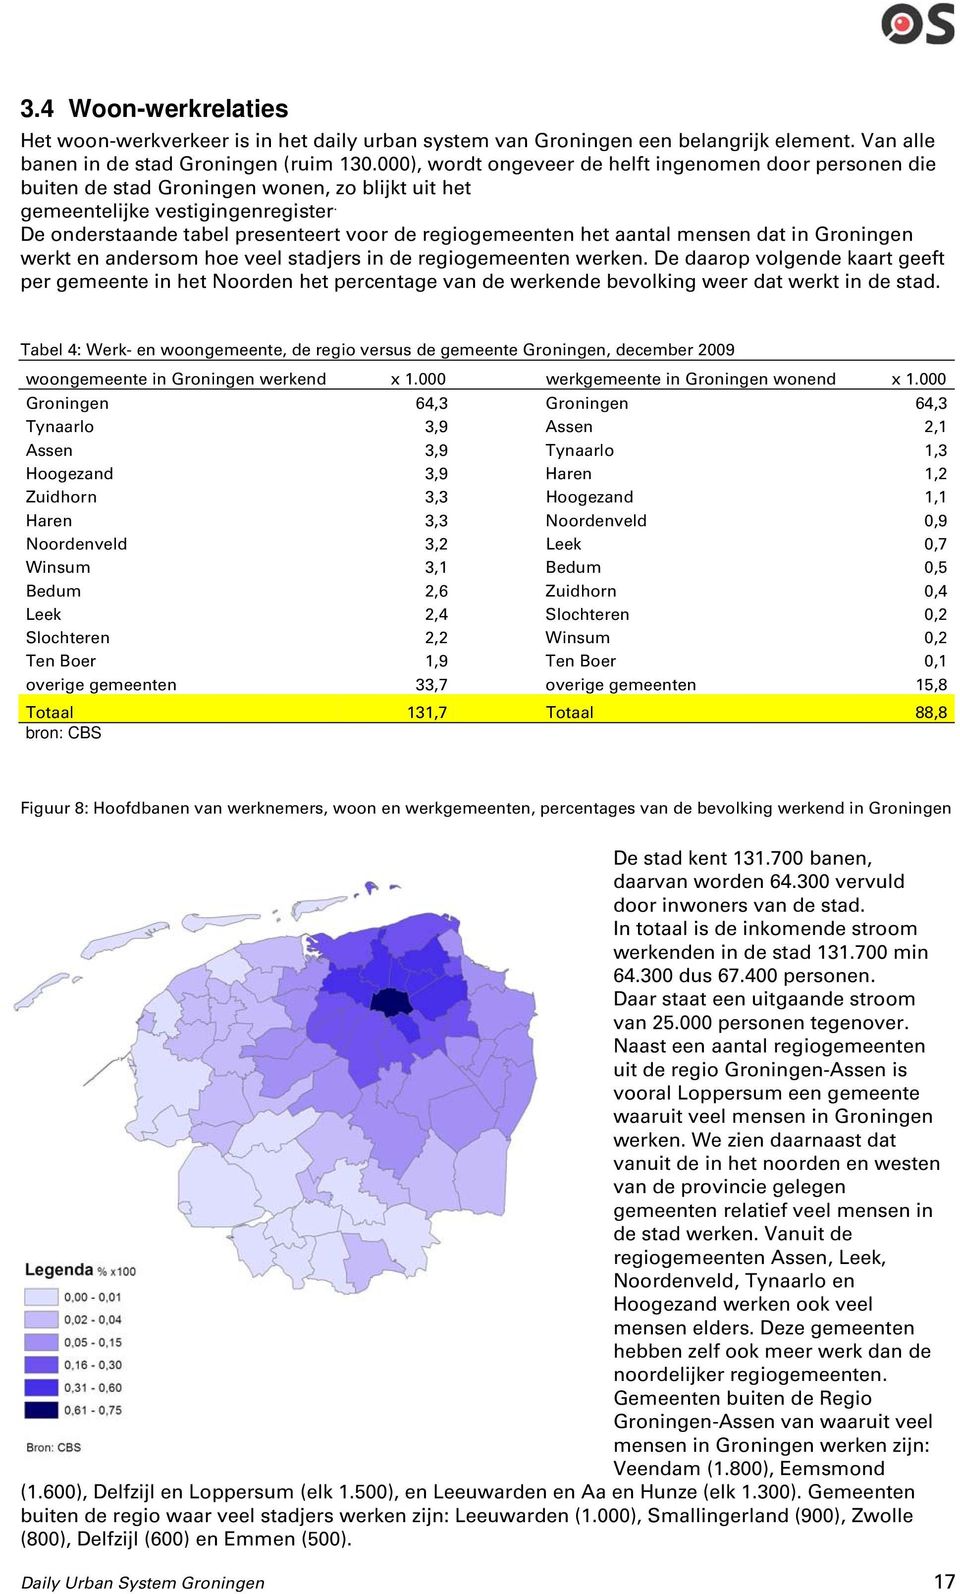 De onderstaande tabel presenteert voor de regiogemeenten het aantal mensen dat in Groningen werkt en andersom hoe veel stadjers in de regiogemeenten werken.